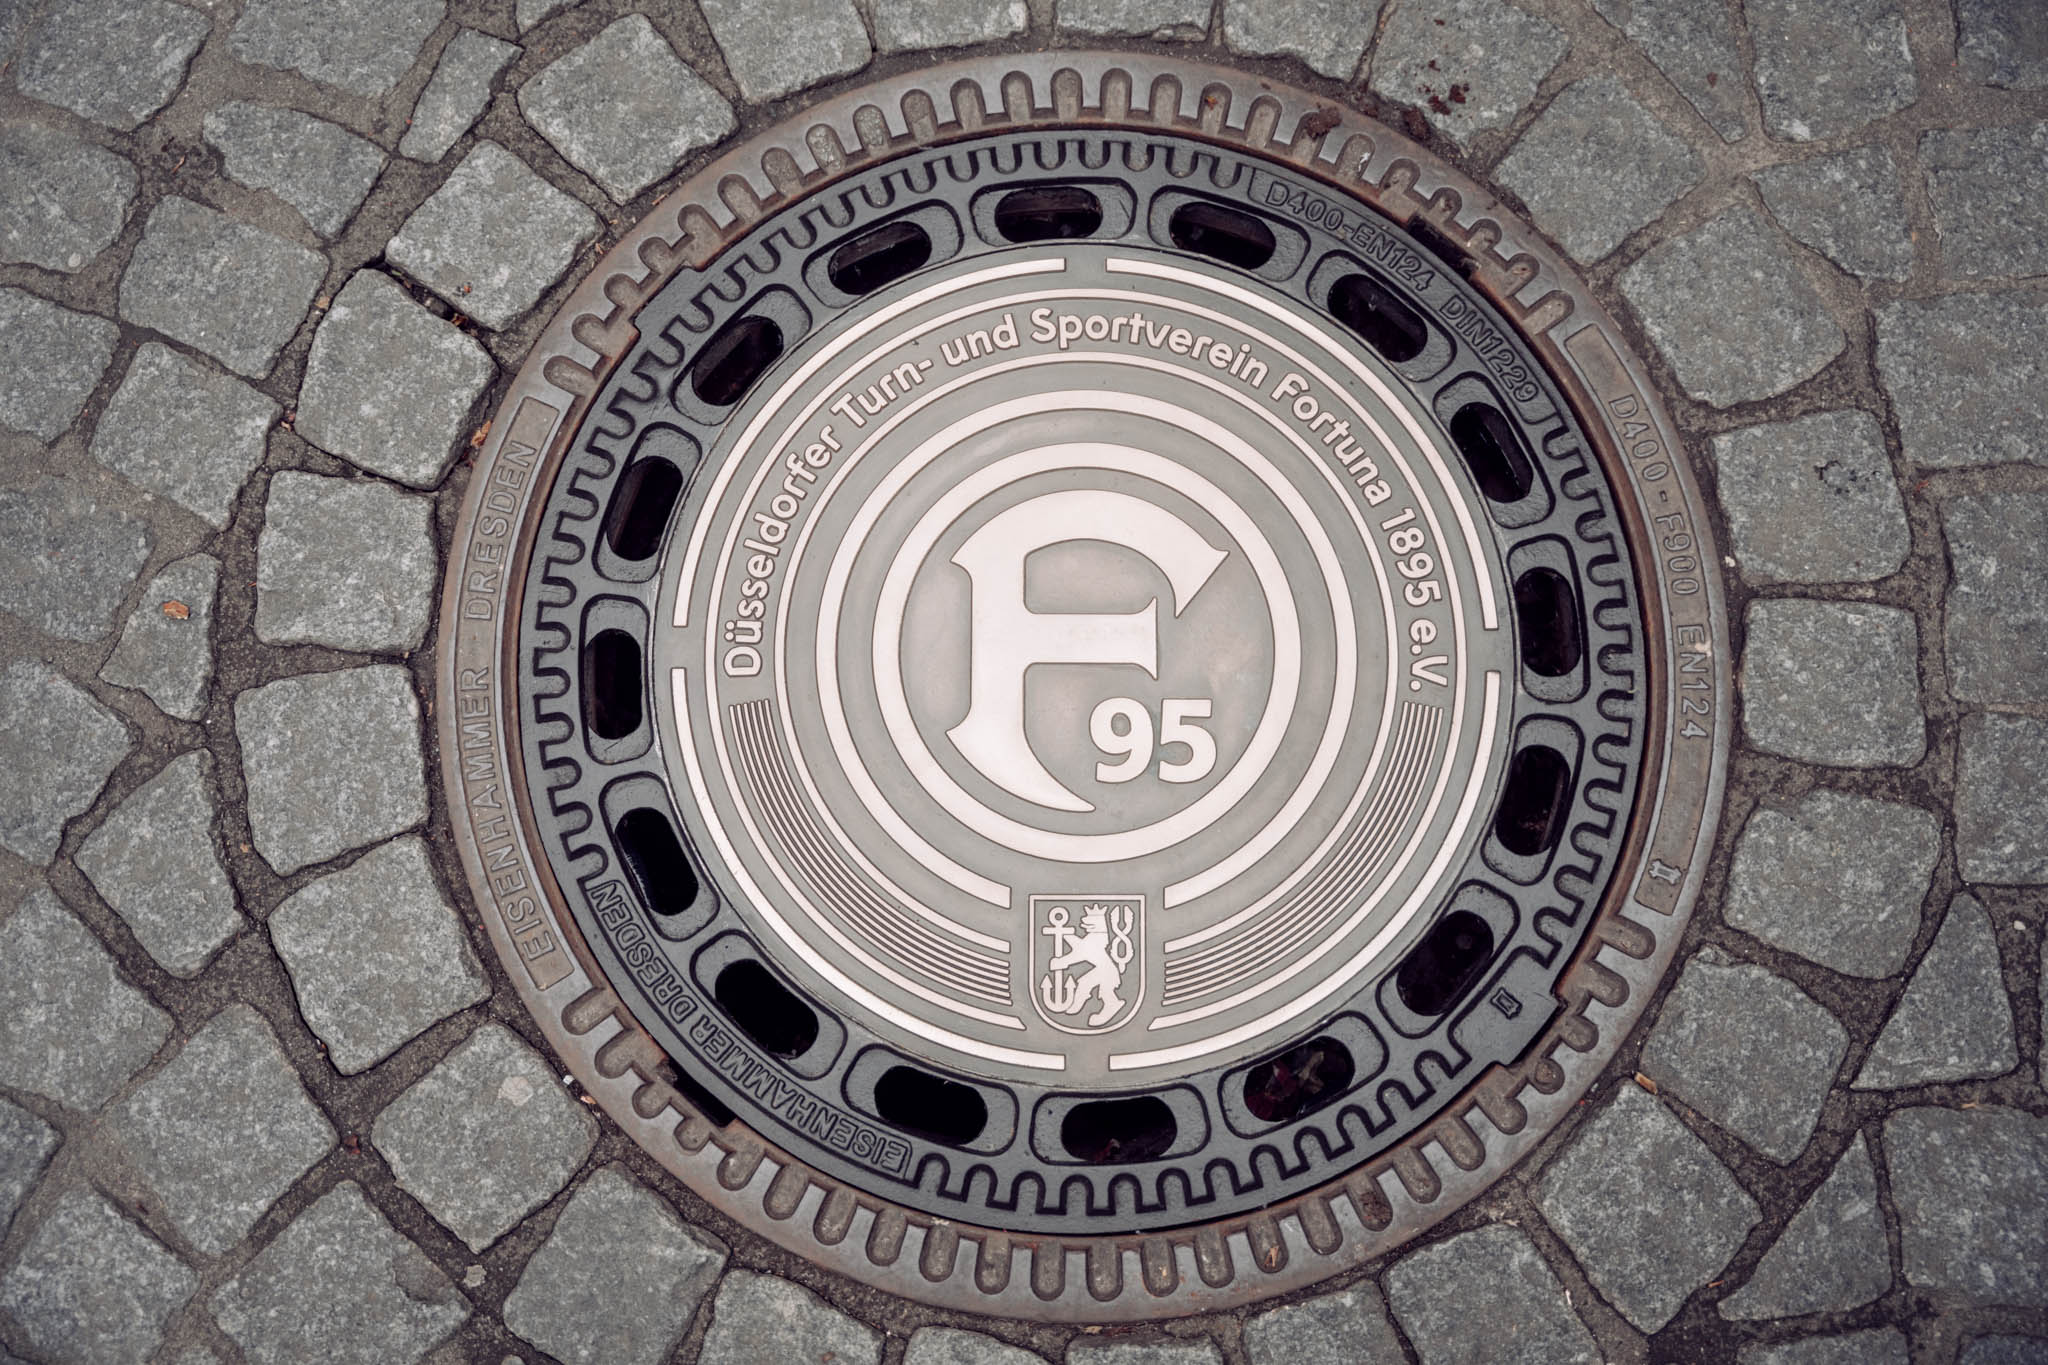 Gemeinsam mit der Altstadtarmenküche und dem Stadtentwässerungsbetrieb Düsseldorf wurde symbolisch für die Spendenaktion ein F95-Kanaldeckel eingesetzt © F95 